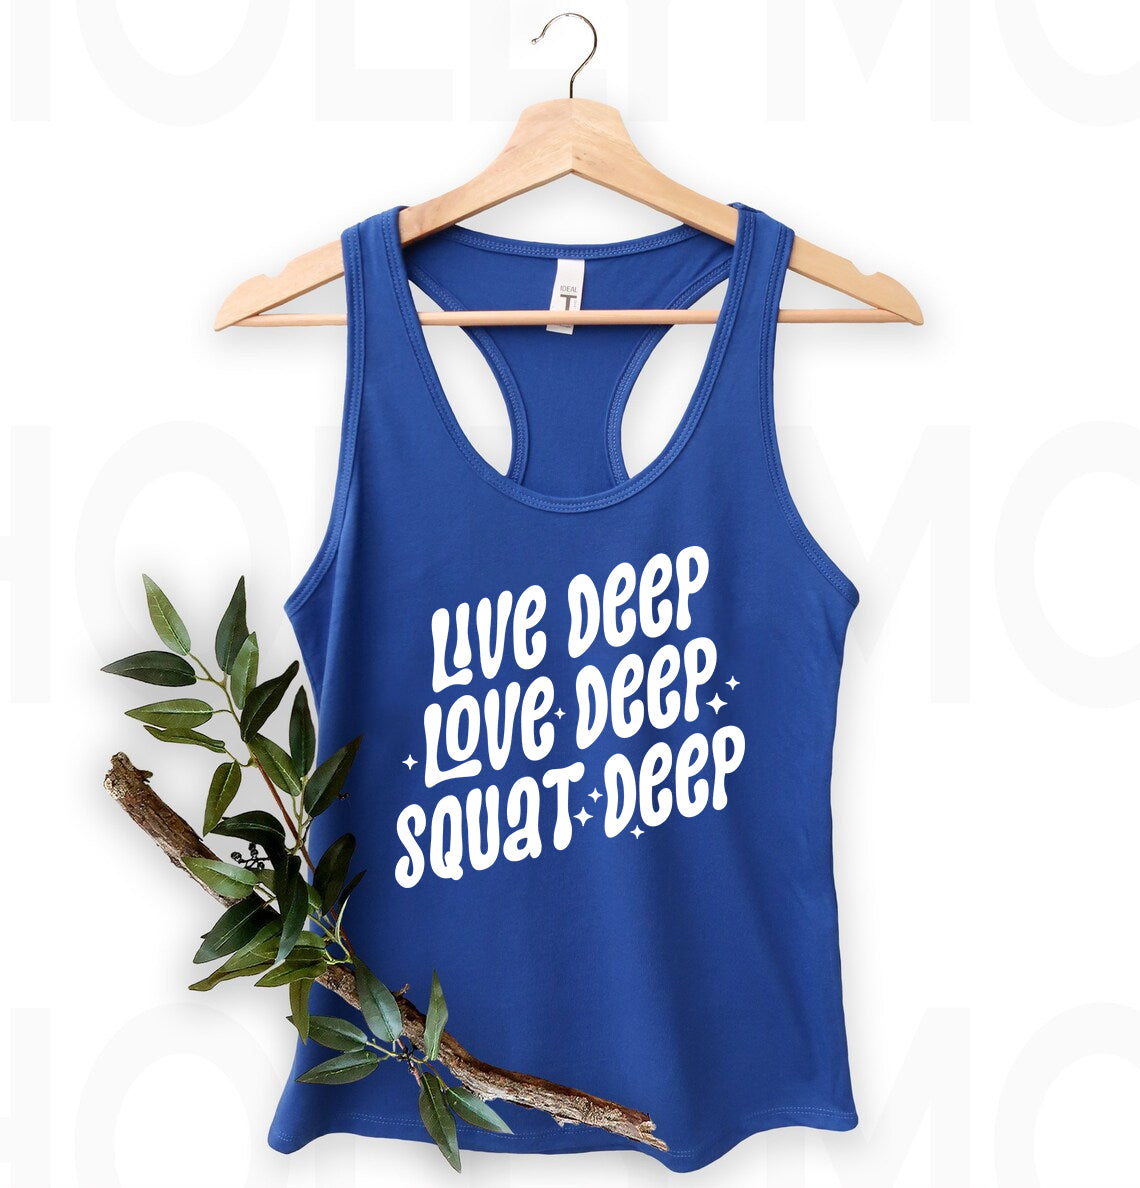 Live Deep Love Deep Squad Deep Graphic Tee